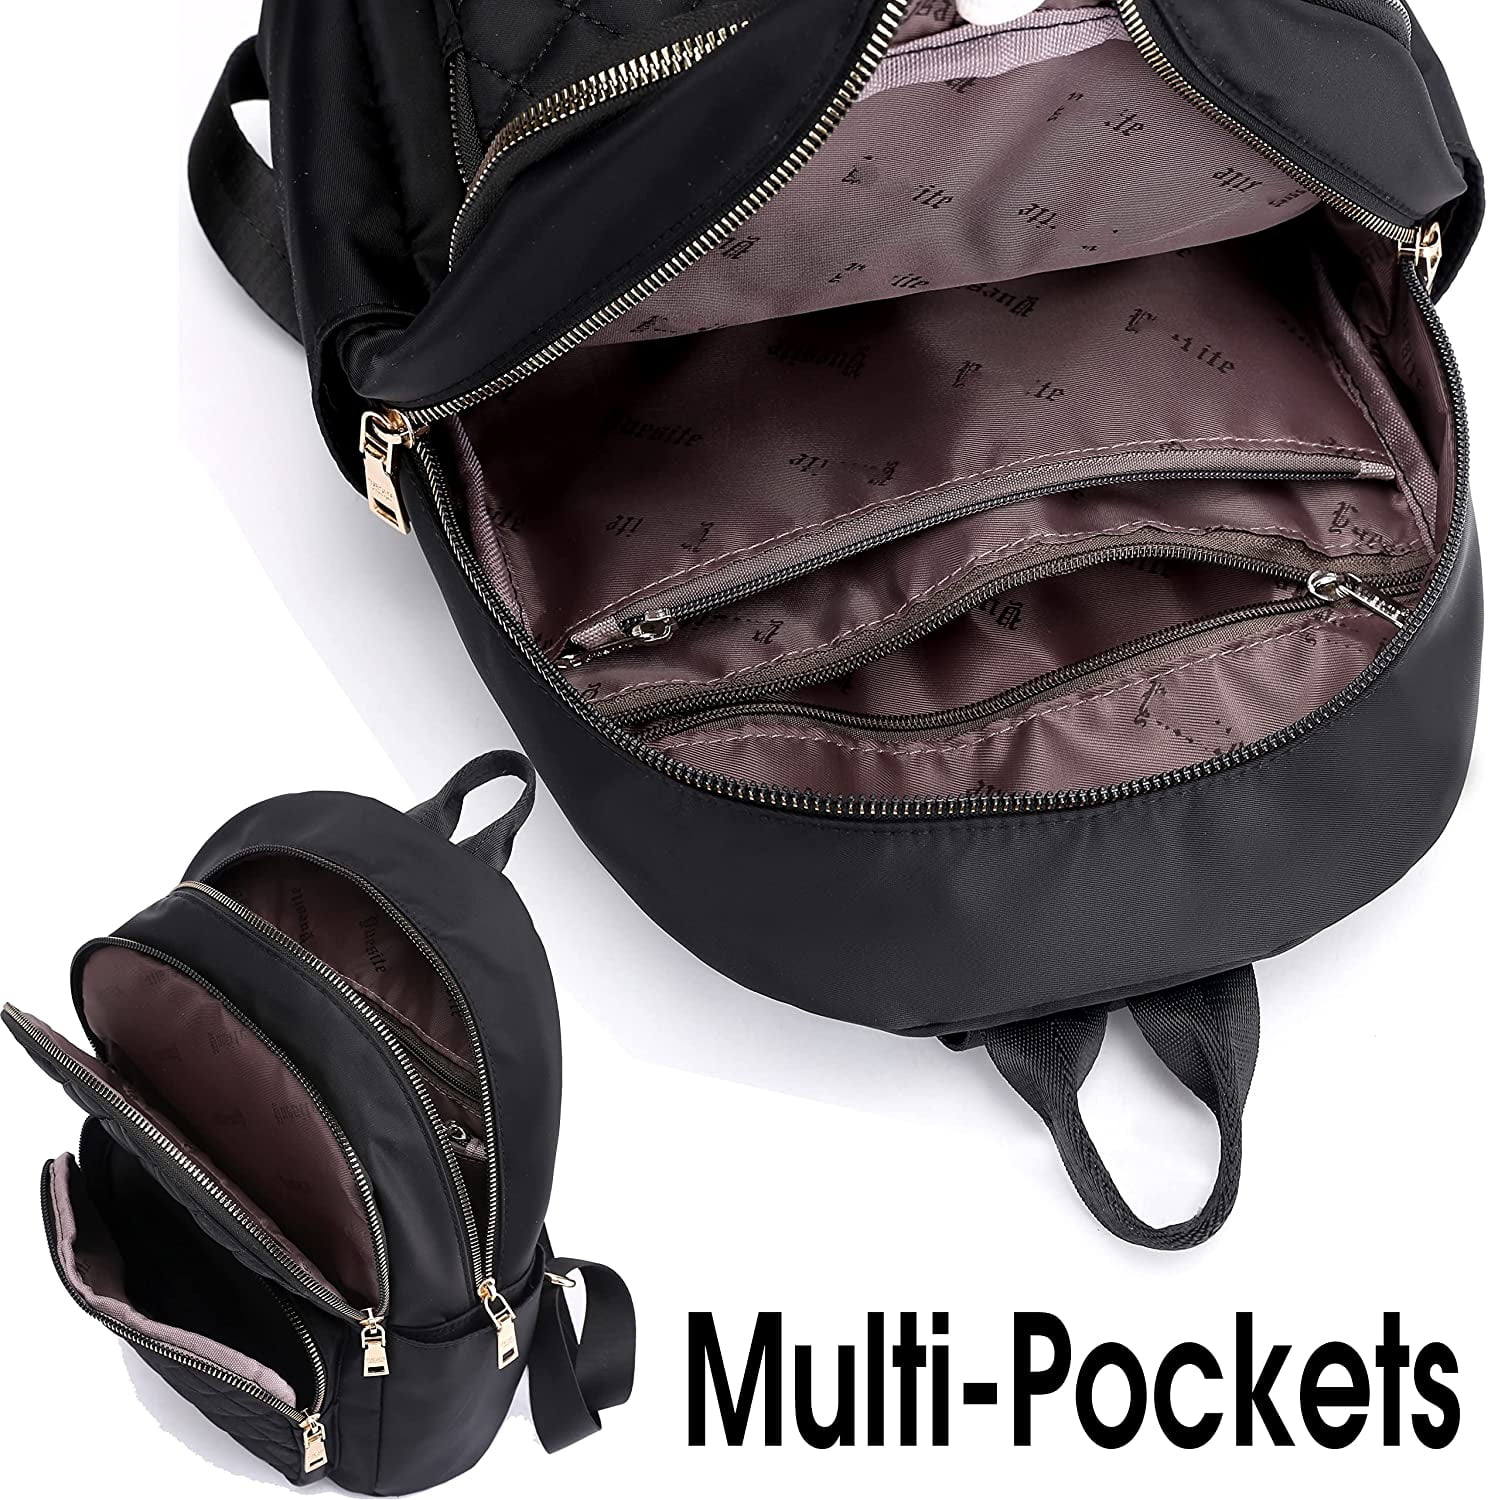 Mini Backpacks in Backpacks - Walmart.com